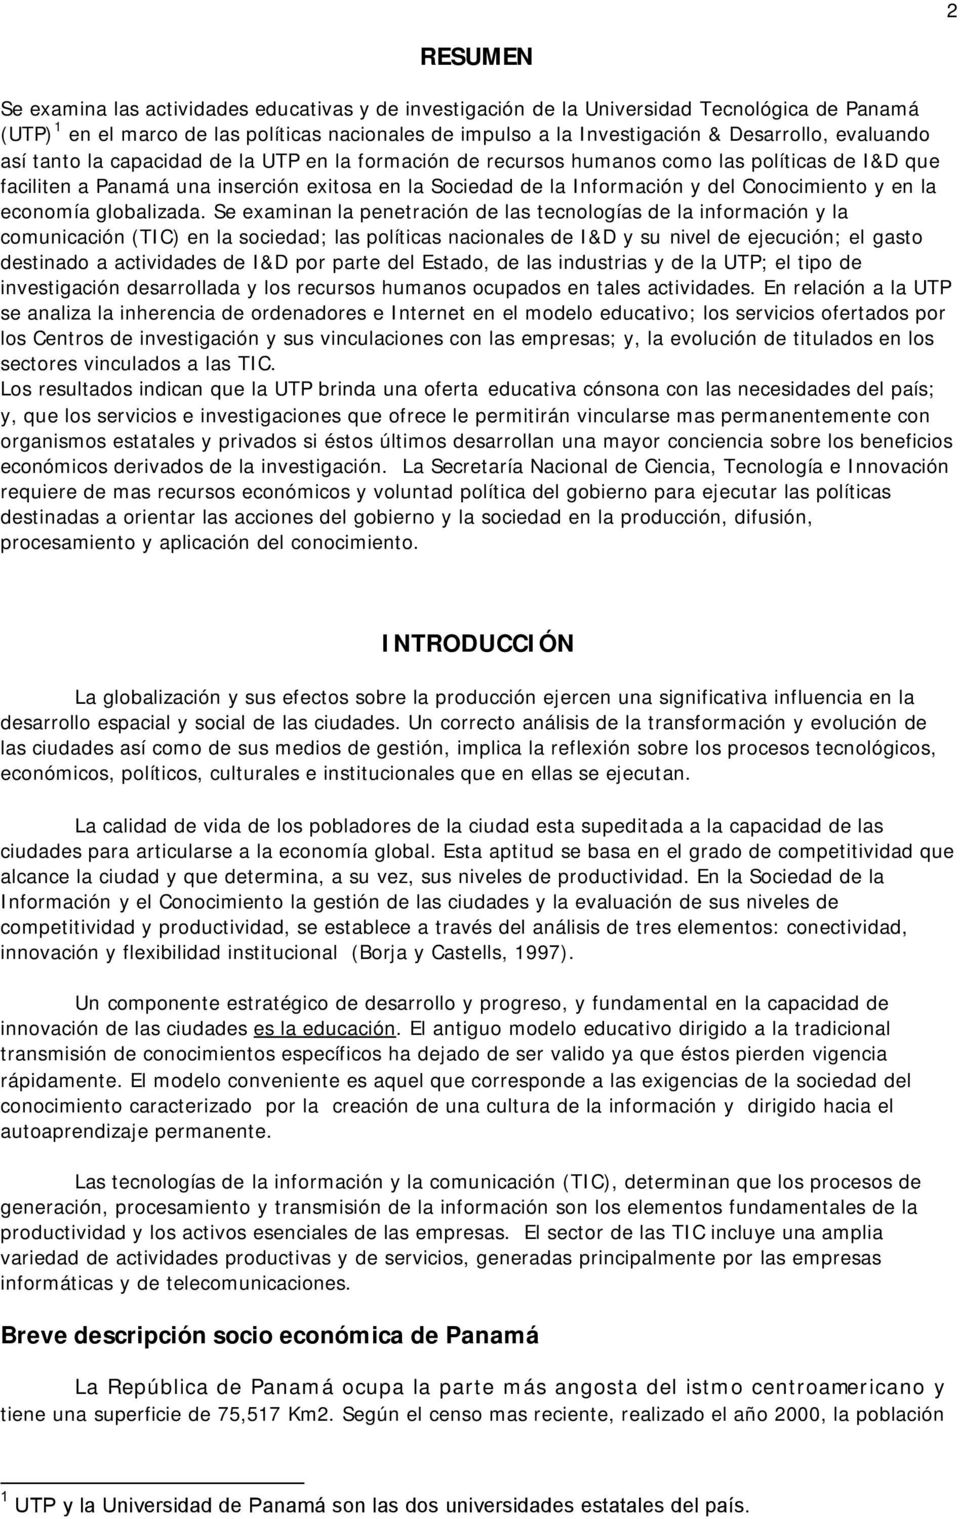 MODELO EDUCATIVO DE LA UNIVERSIDAD TECNOLÓGICA DE PANAMÁ Y POLÍTICAS  PANAMEÑAS DE IMPULSO A LA INVESTIGACIÓN & DESARROLLO - PDF Free Download